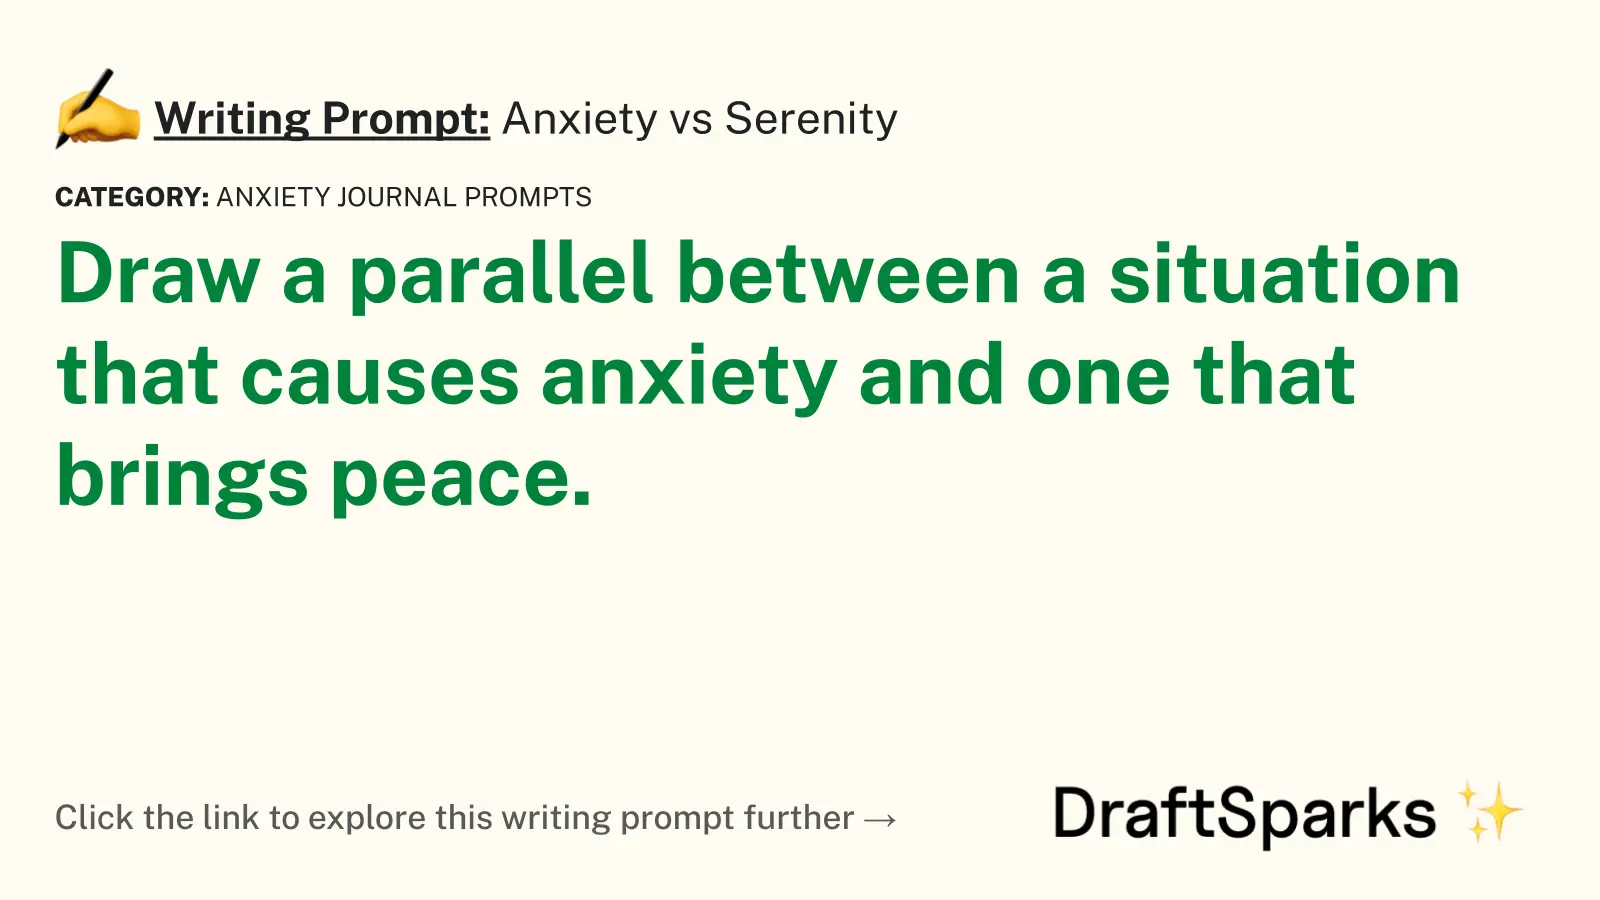 Anxiety vs Serenity